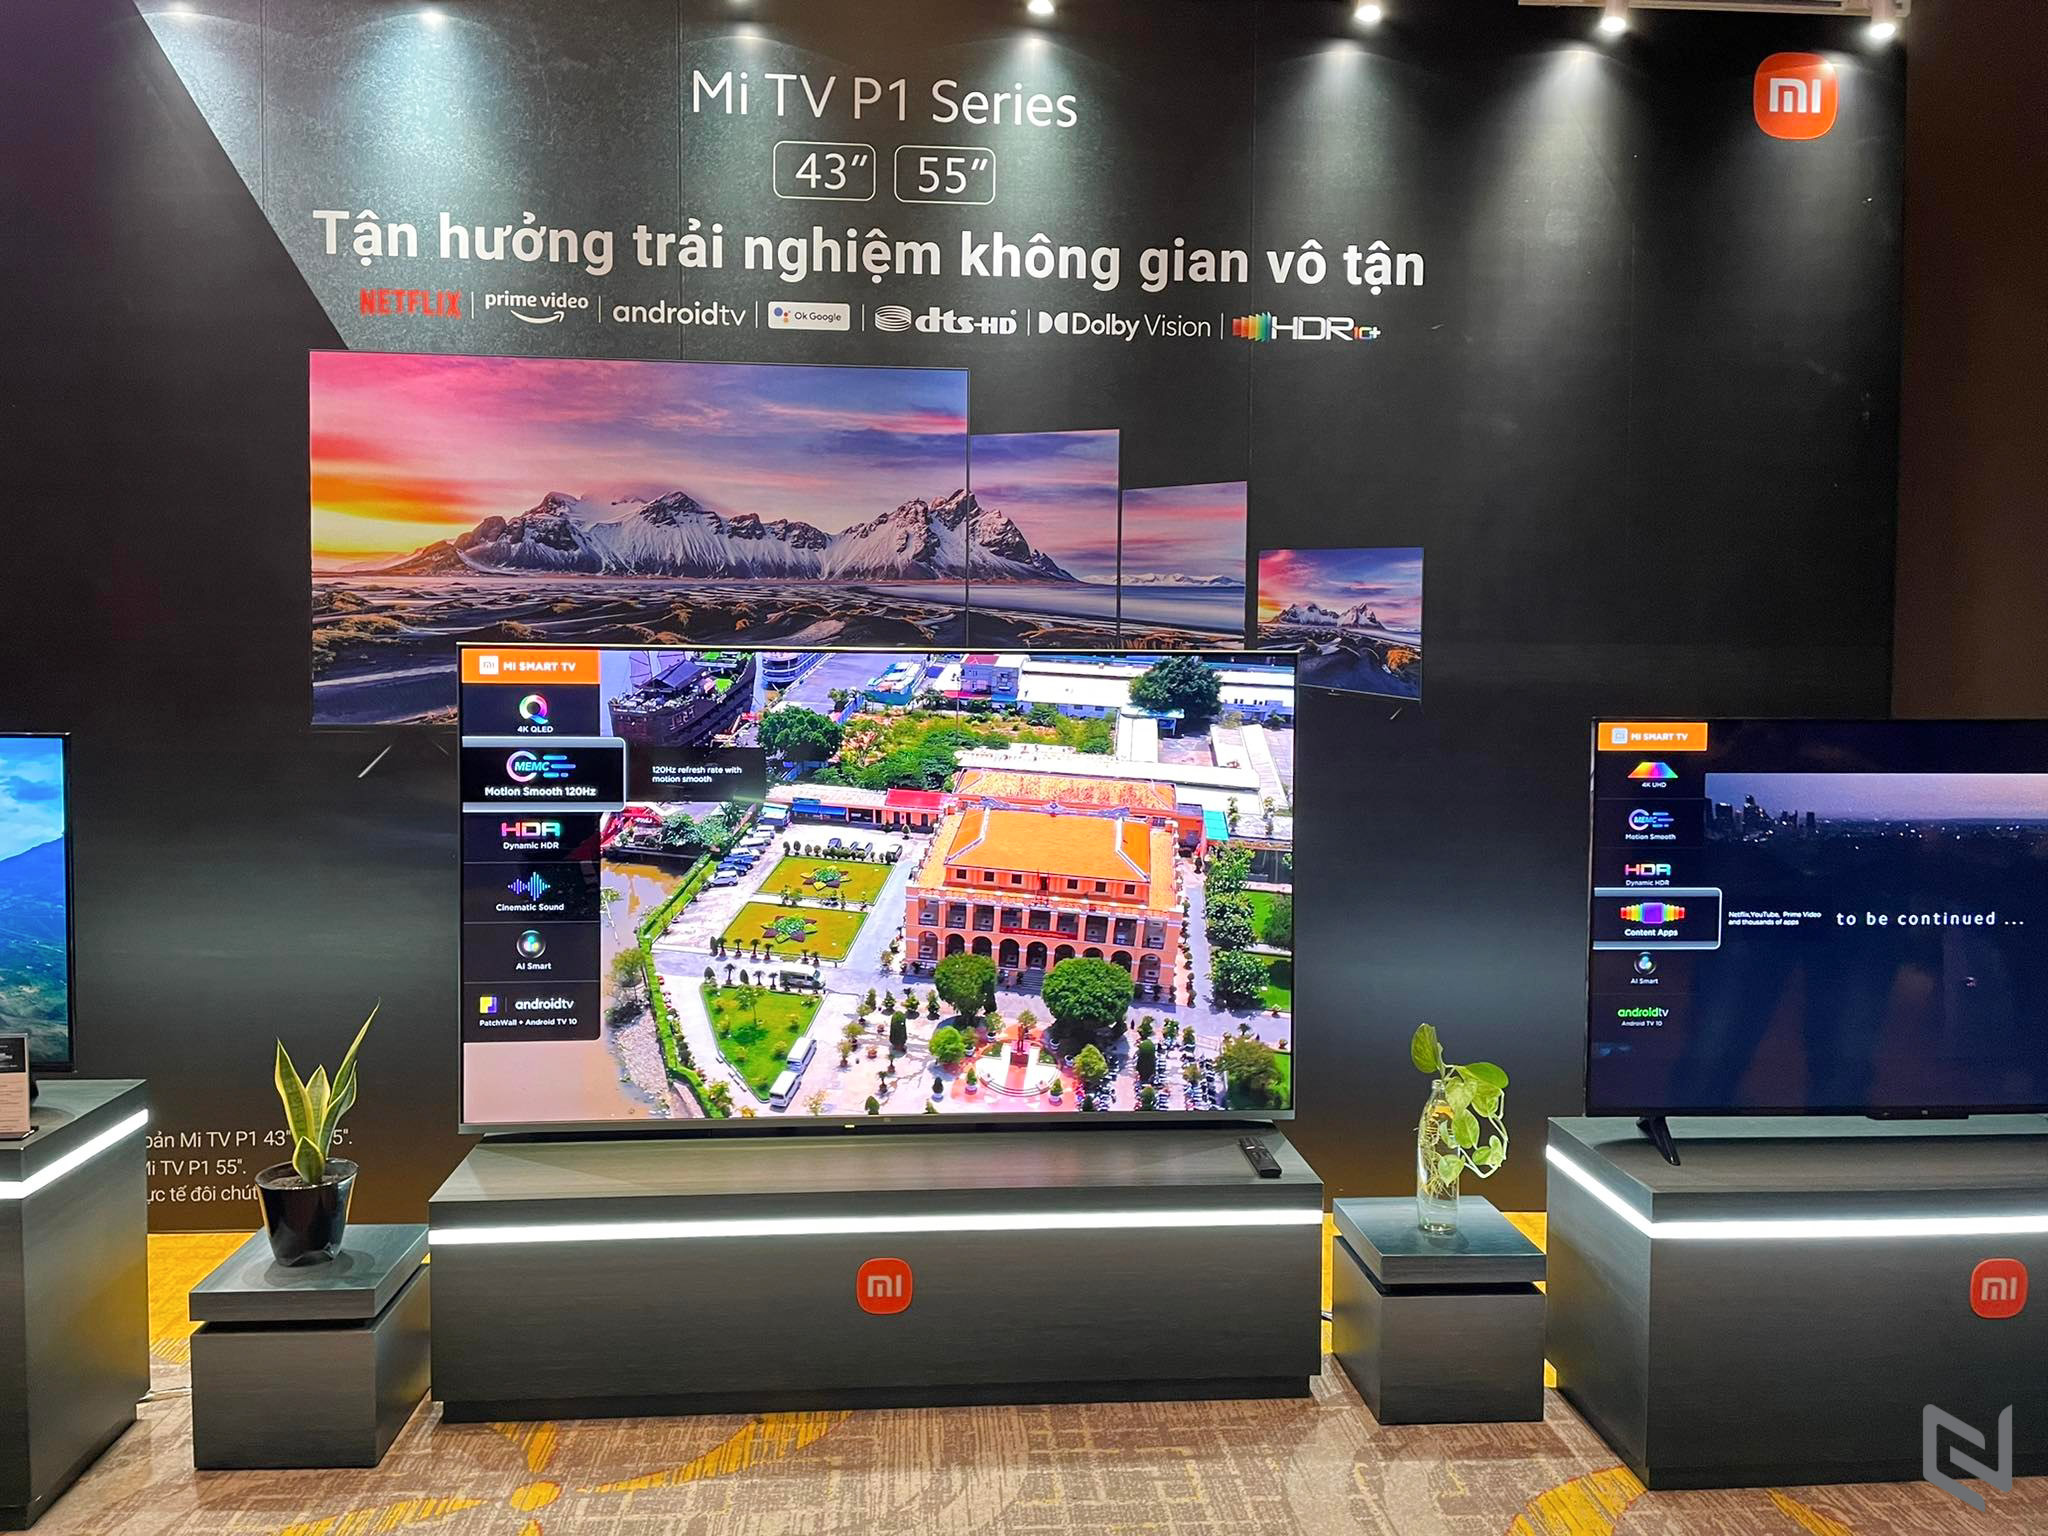 Lần đầu tiên Xiaomi ra mắt dòng TV thông minh 4K cao cấp tại Việt Nam